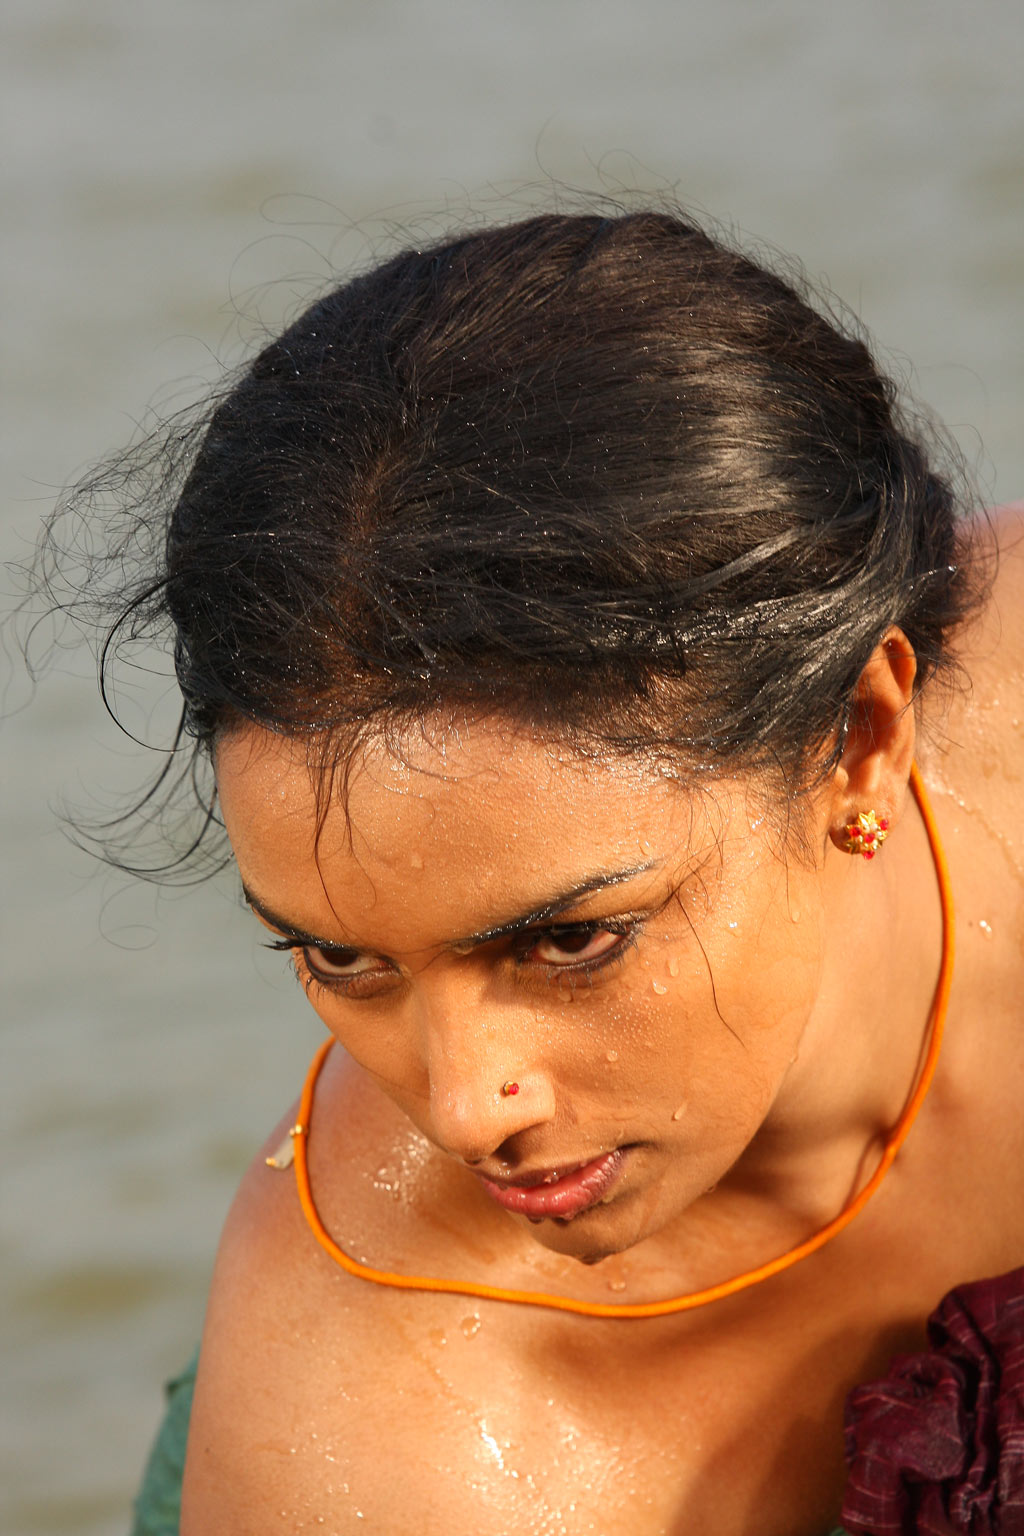 http://1.bp.blogspot.com/-QYqmNrRWGcQ/TgW8lX-hIzI/AAAAAAAAAtM/cmpuPrpwBaI/s1600/Actress-Swetha-Menon-hot-pics-from-Thaaram-Tamil-Movie-0cfmj15.jpg